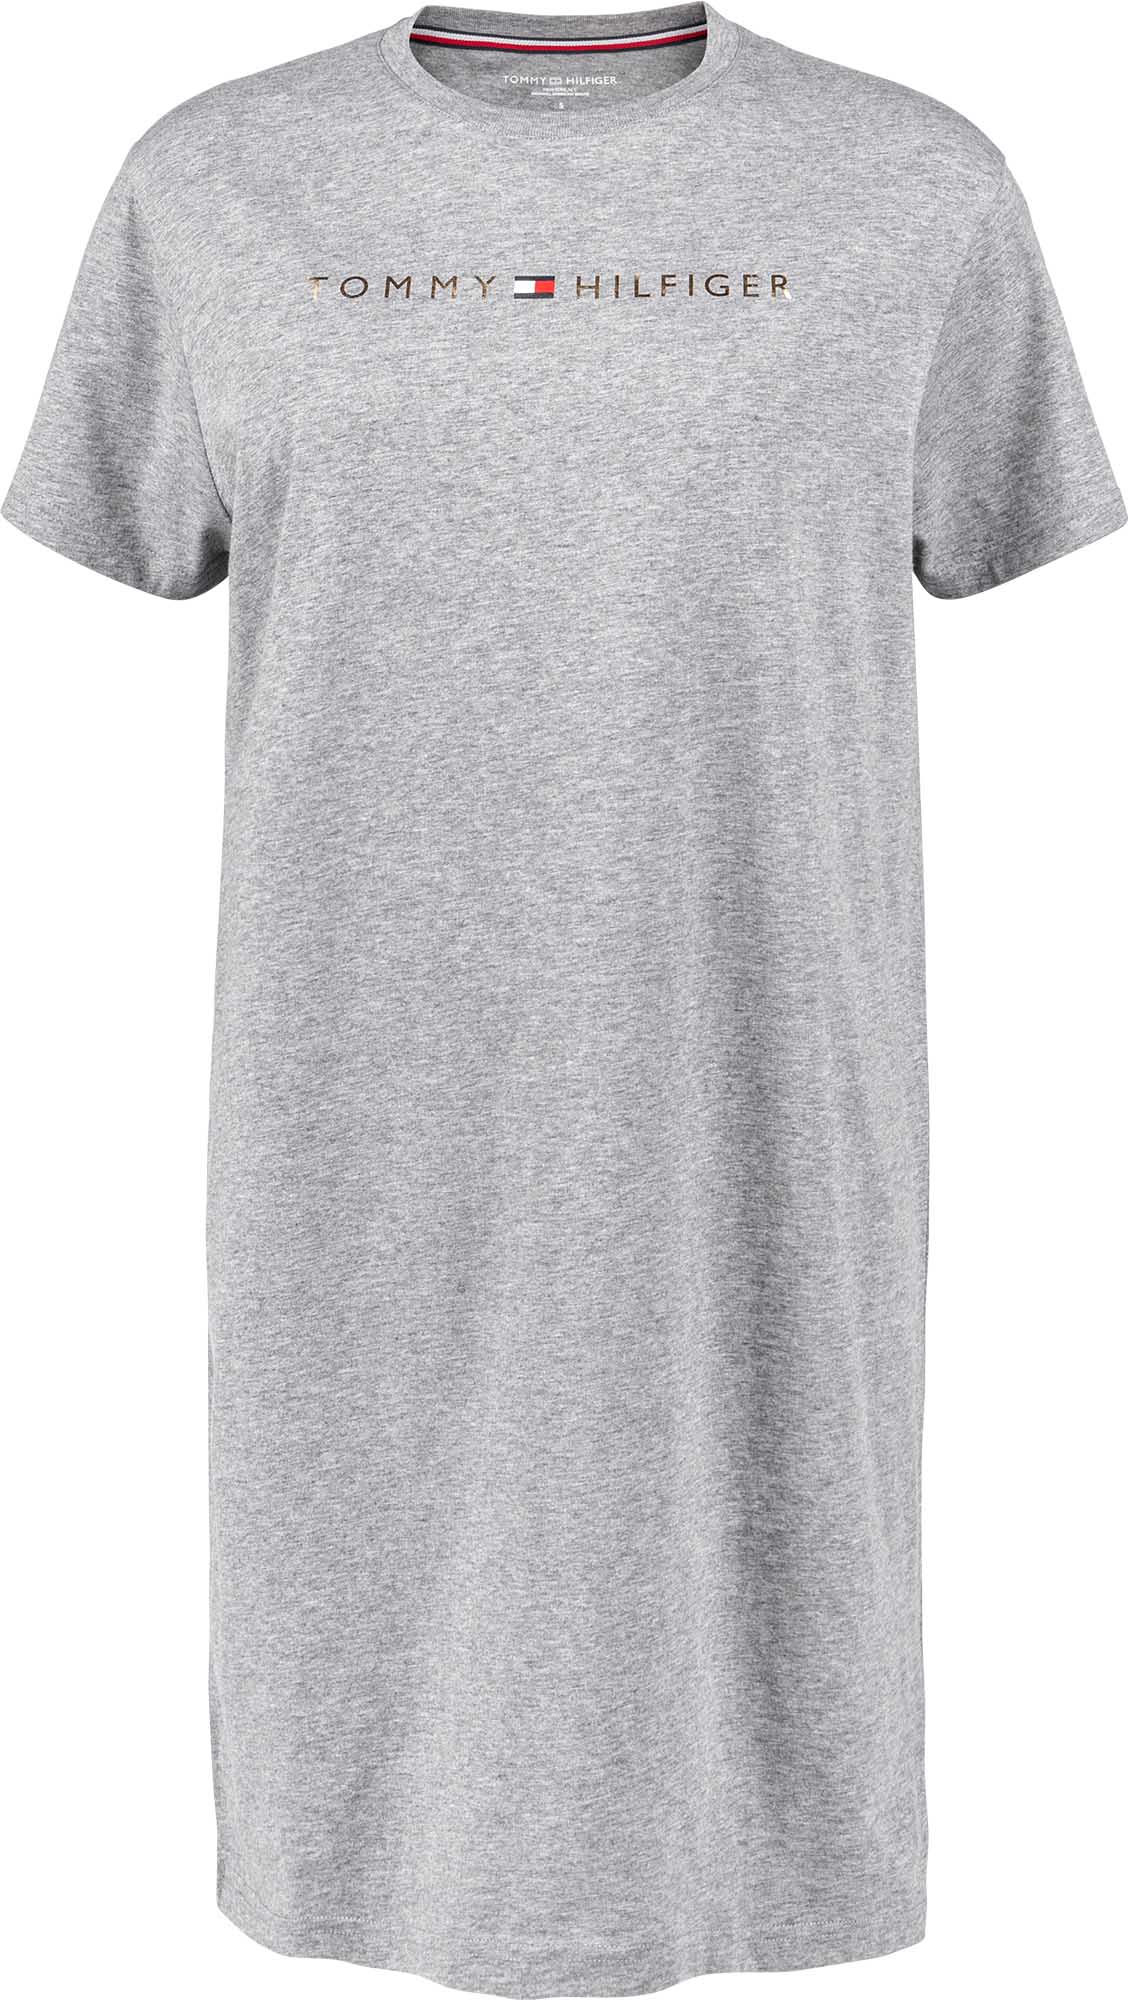 Women’s long T-shirt